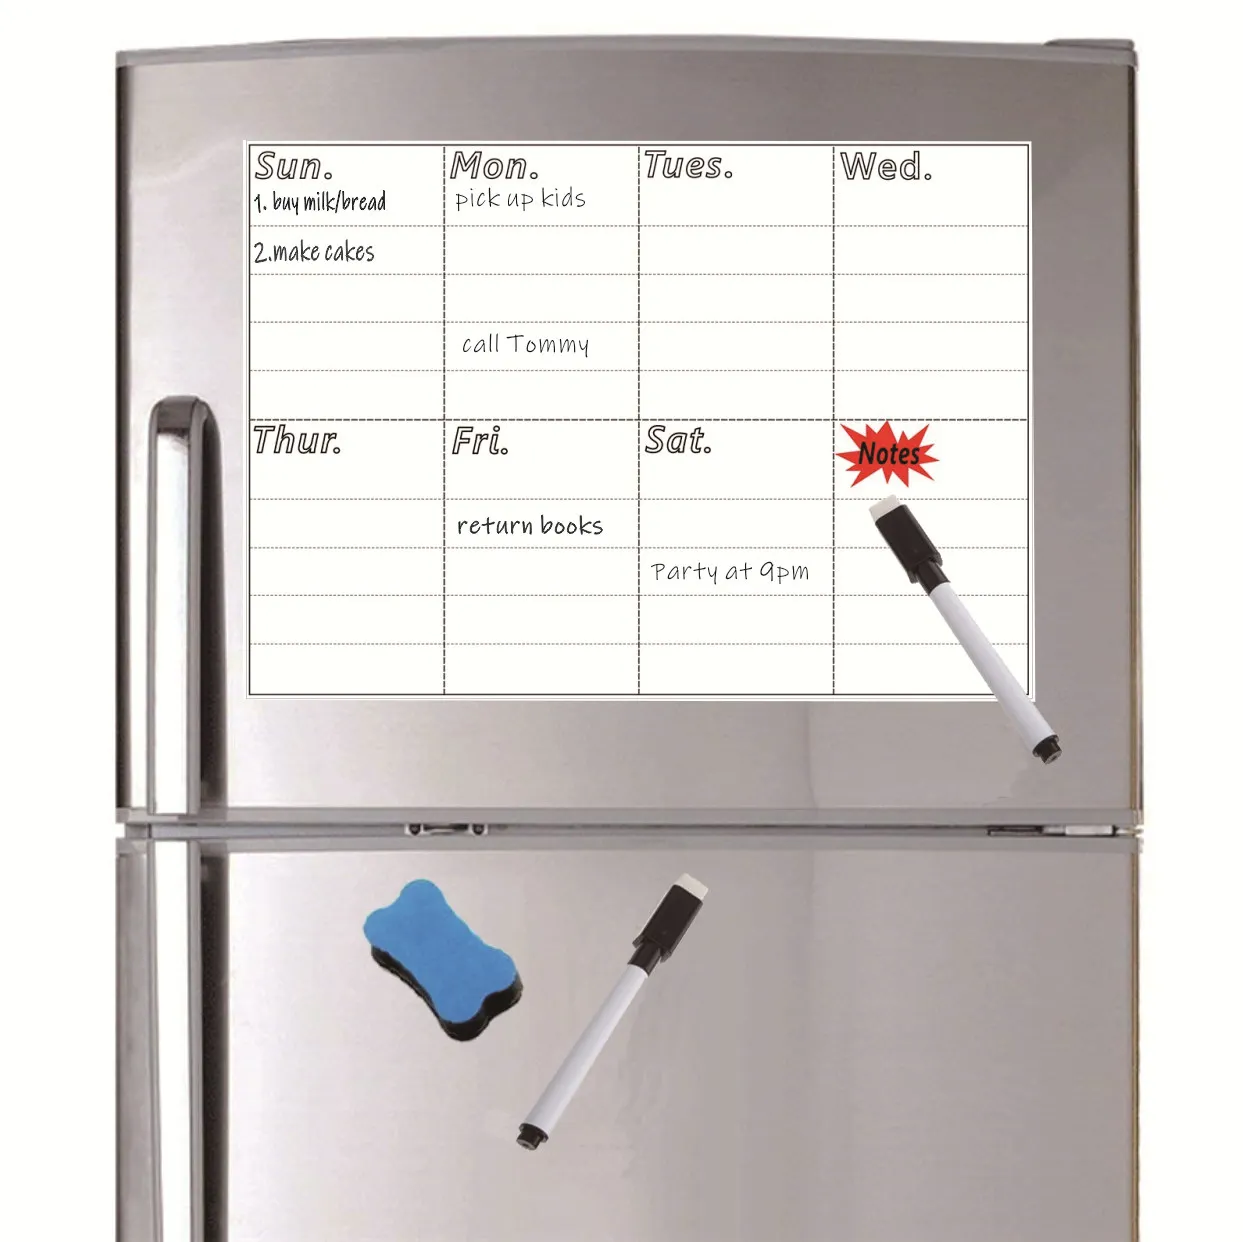 A4 магнитная доска меню для холодильника наклейка Еженедельный планировщик продуктов список заметок кухонный холодильник магнитная доска